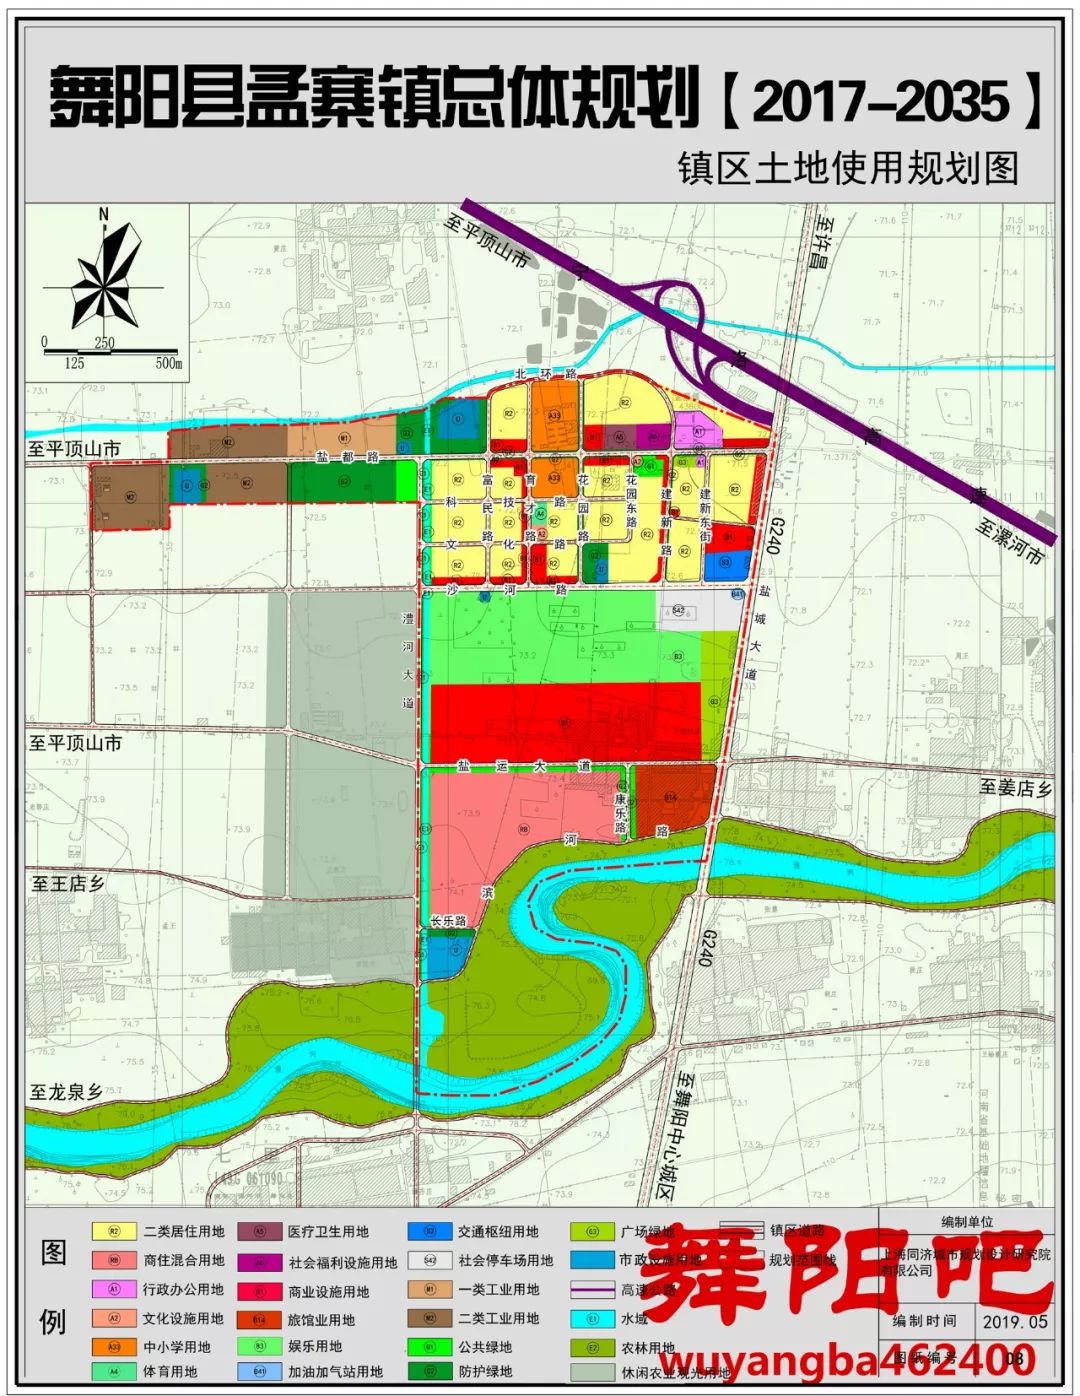 孟寨镇地图图片